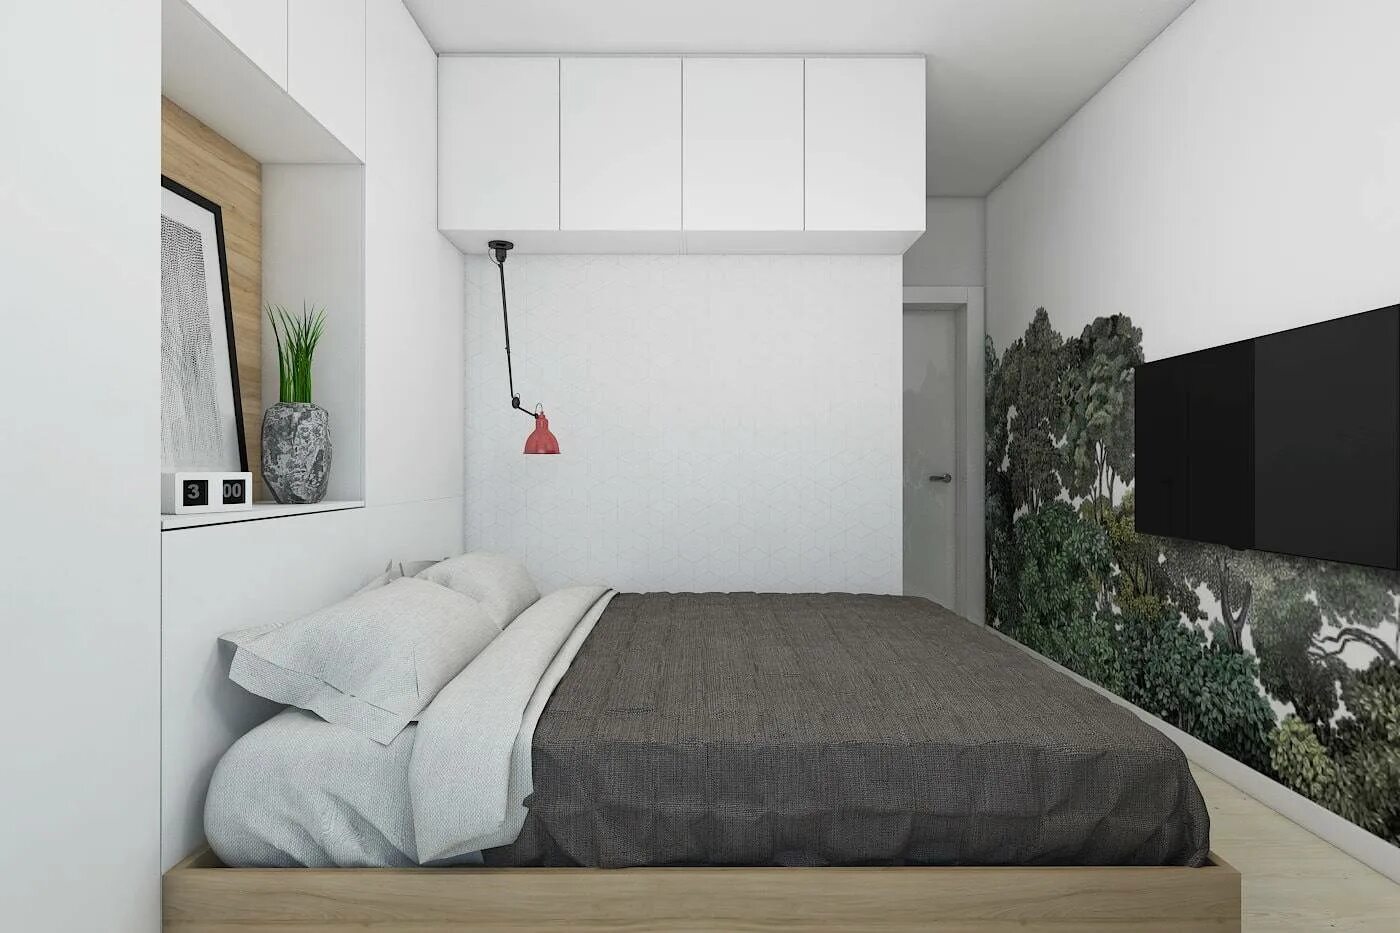 Как выглядит 6 квадратных метров. Маленькая спальня. Спальня в маленькой квартире. Планировка небольшой спальни. Спальня 6 кв.м.